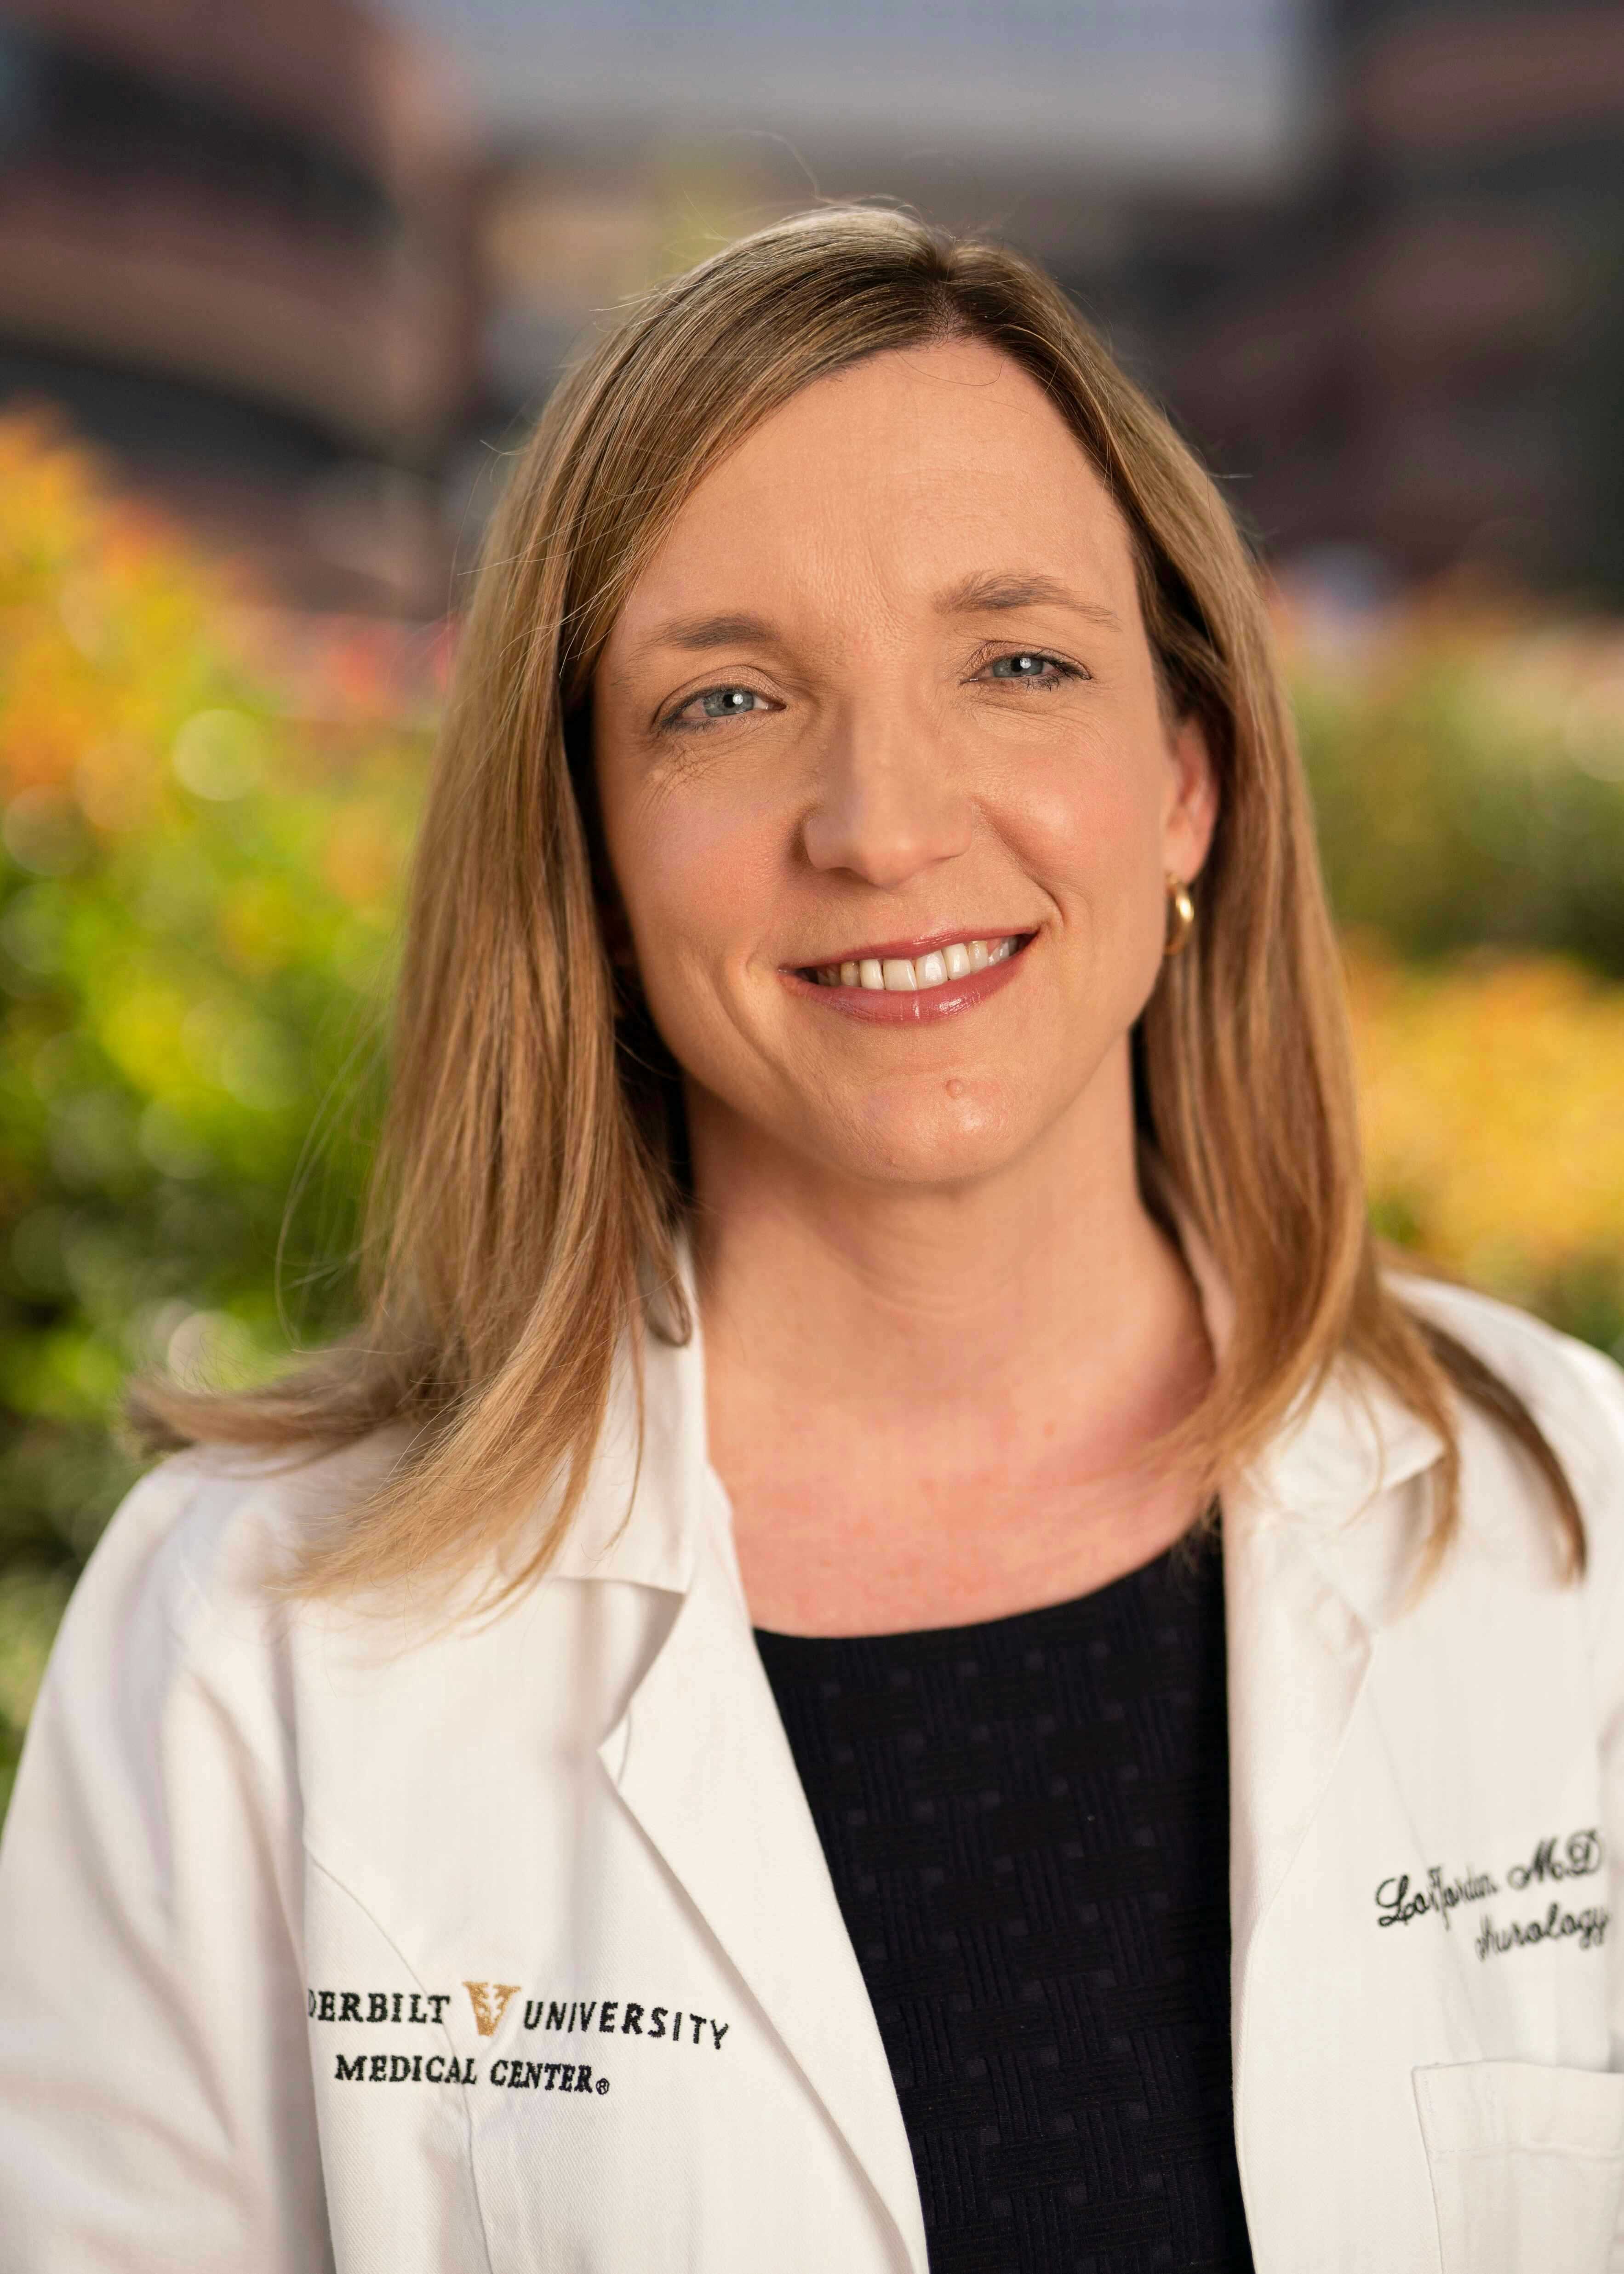 Lori Chaffin Jordan, MD, PhD